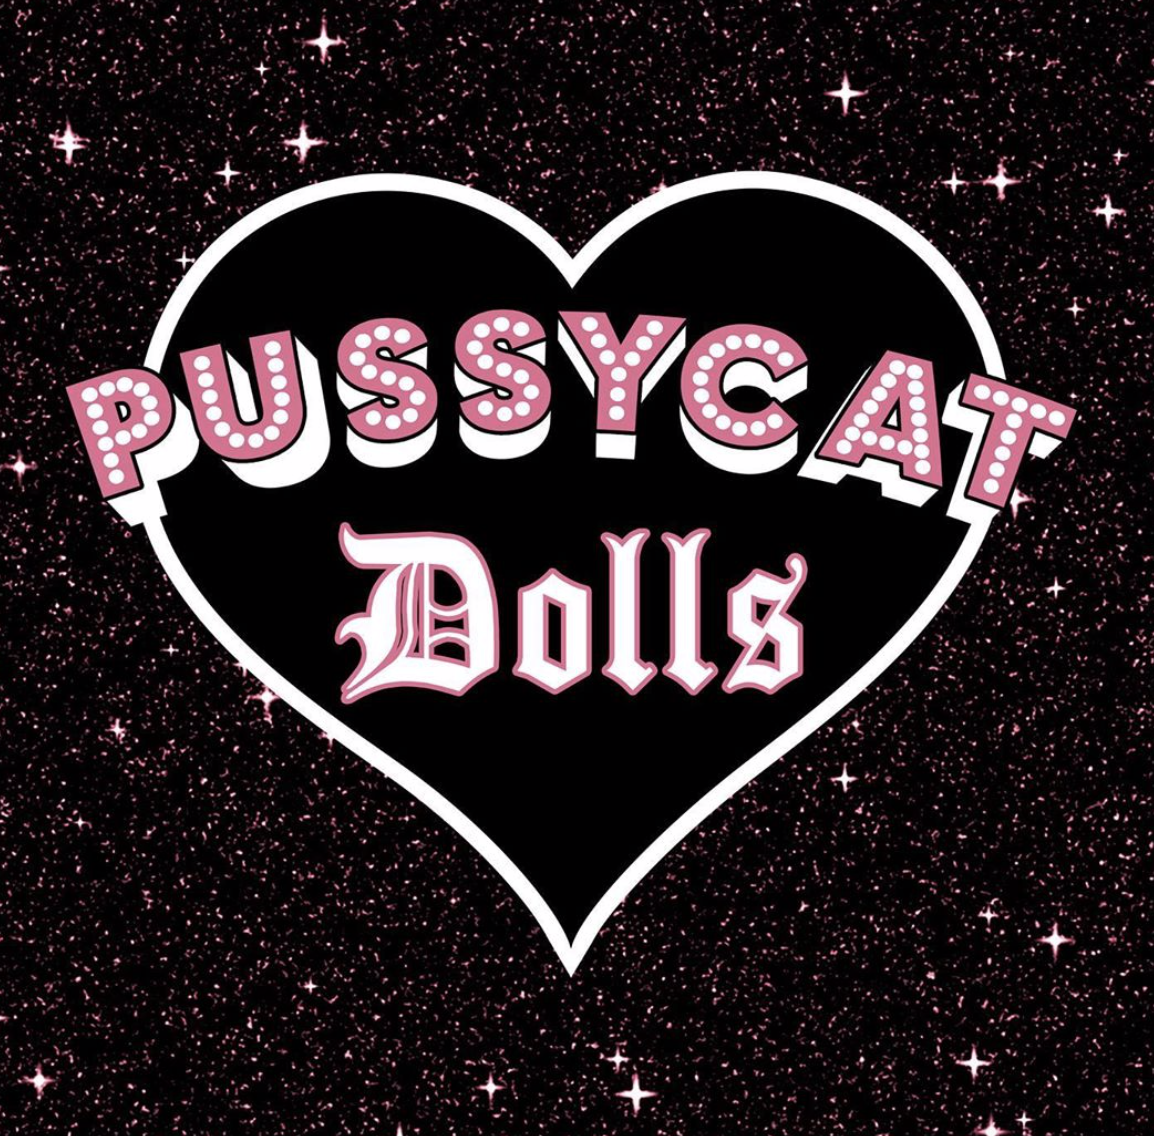 Pussycats dolls - tournée